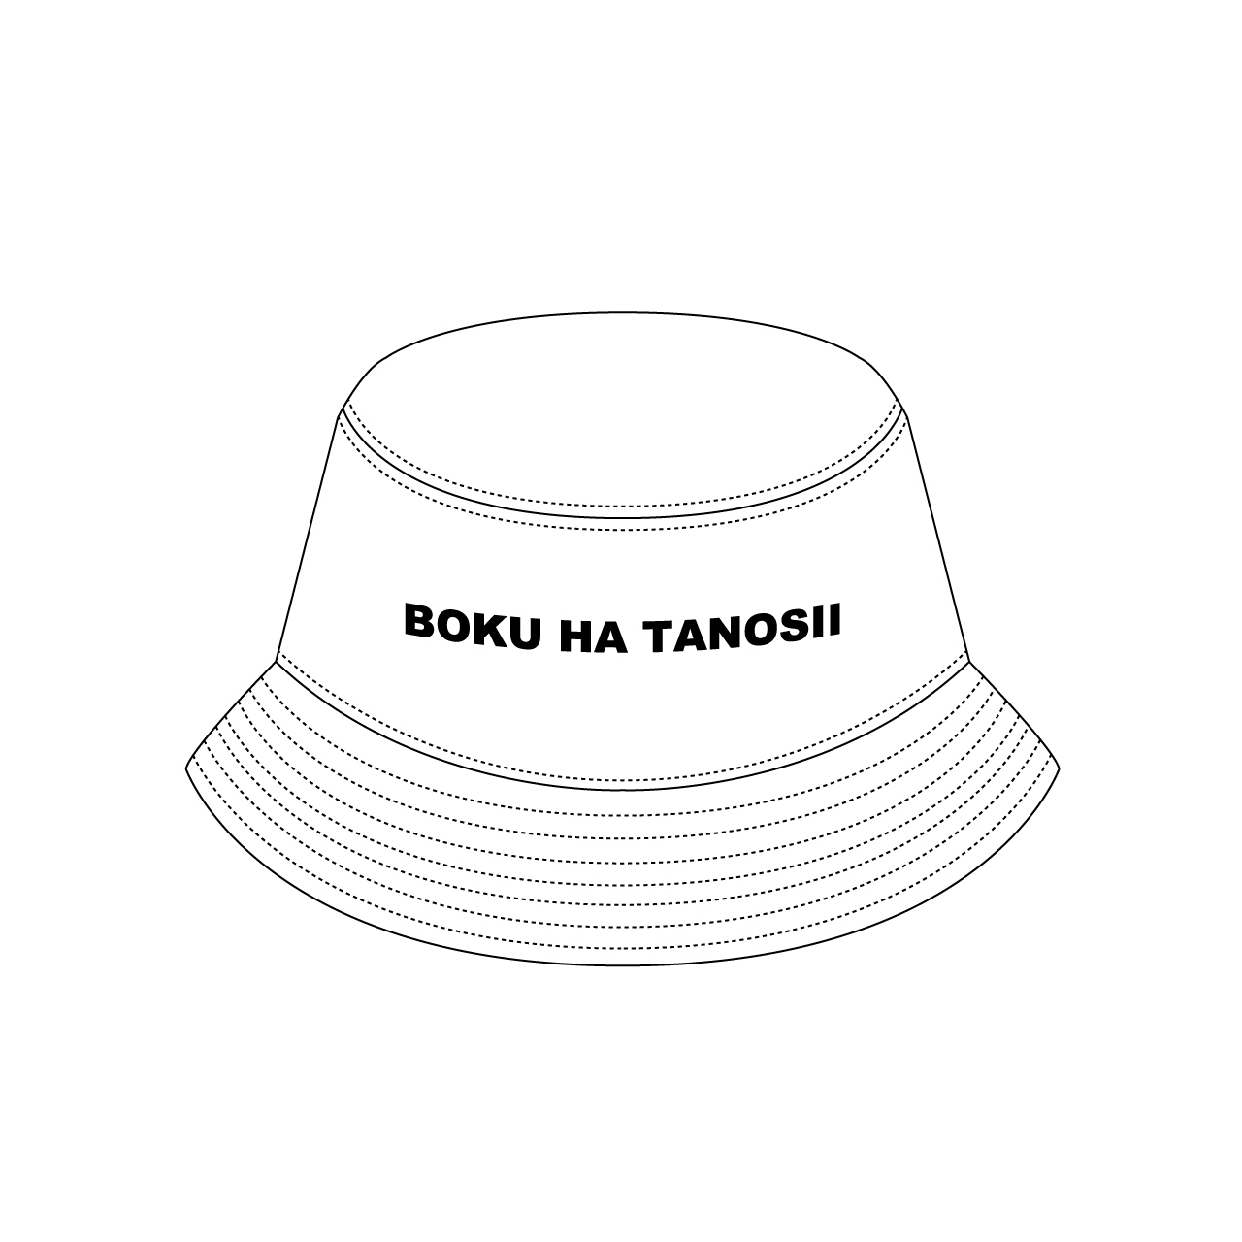 その他ファッション雑貨・小物おすすめ商品：BOKU HA TANOSII(ボクハタノシイ) BOKUTANO BUCKET HAT ホワイト